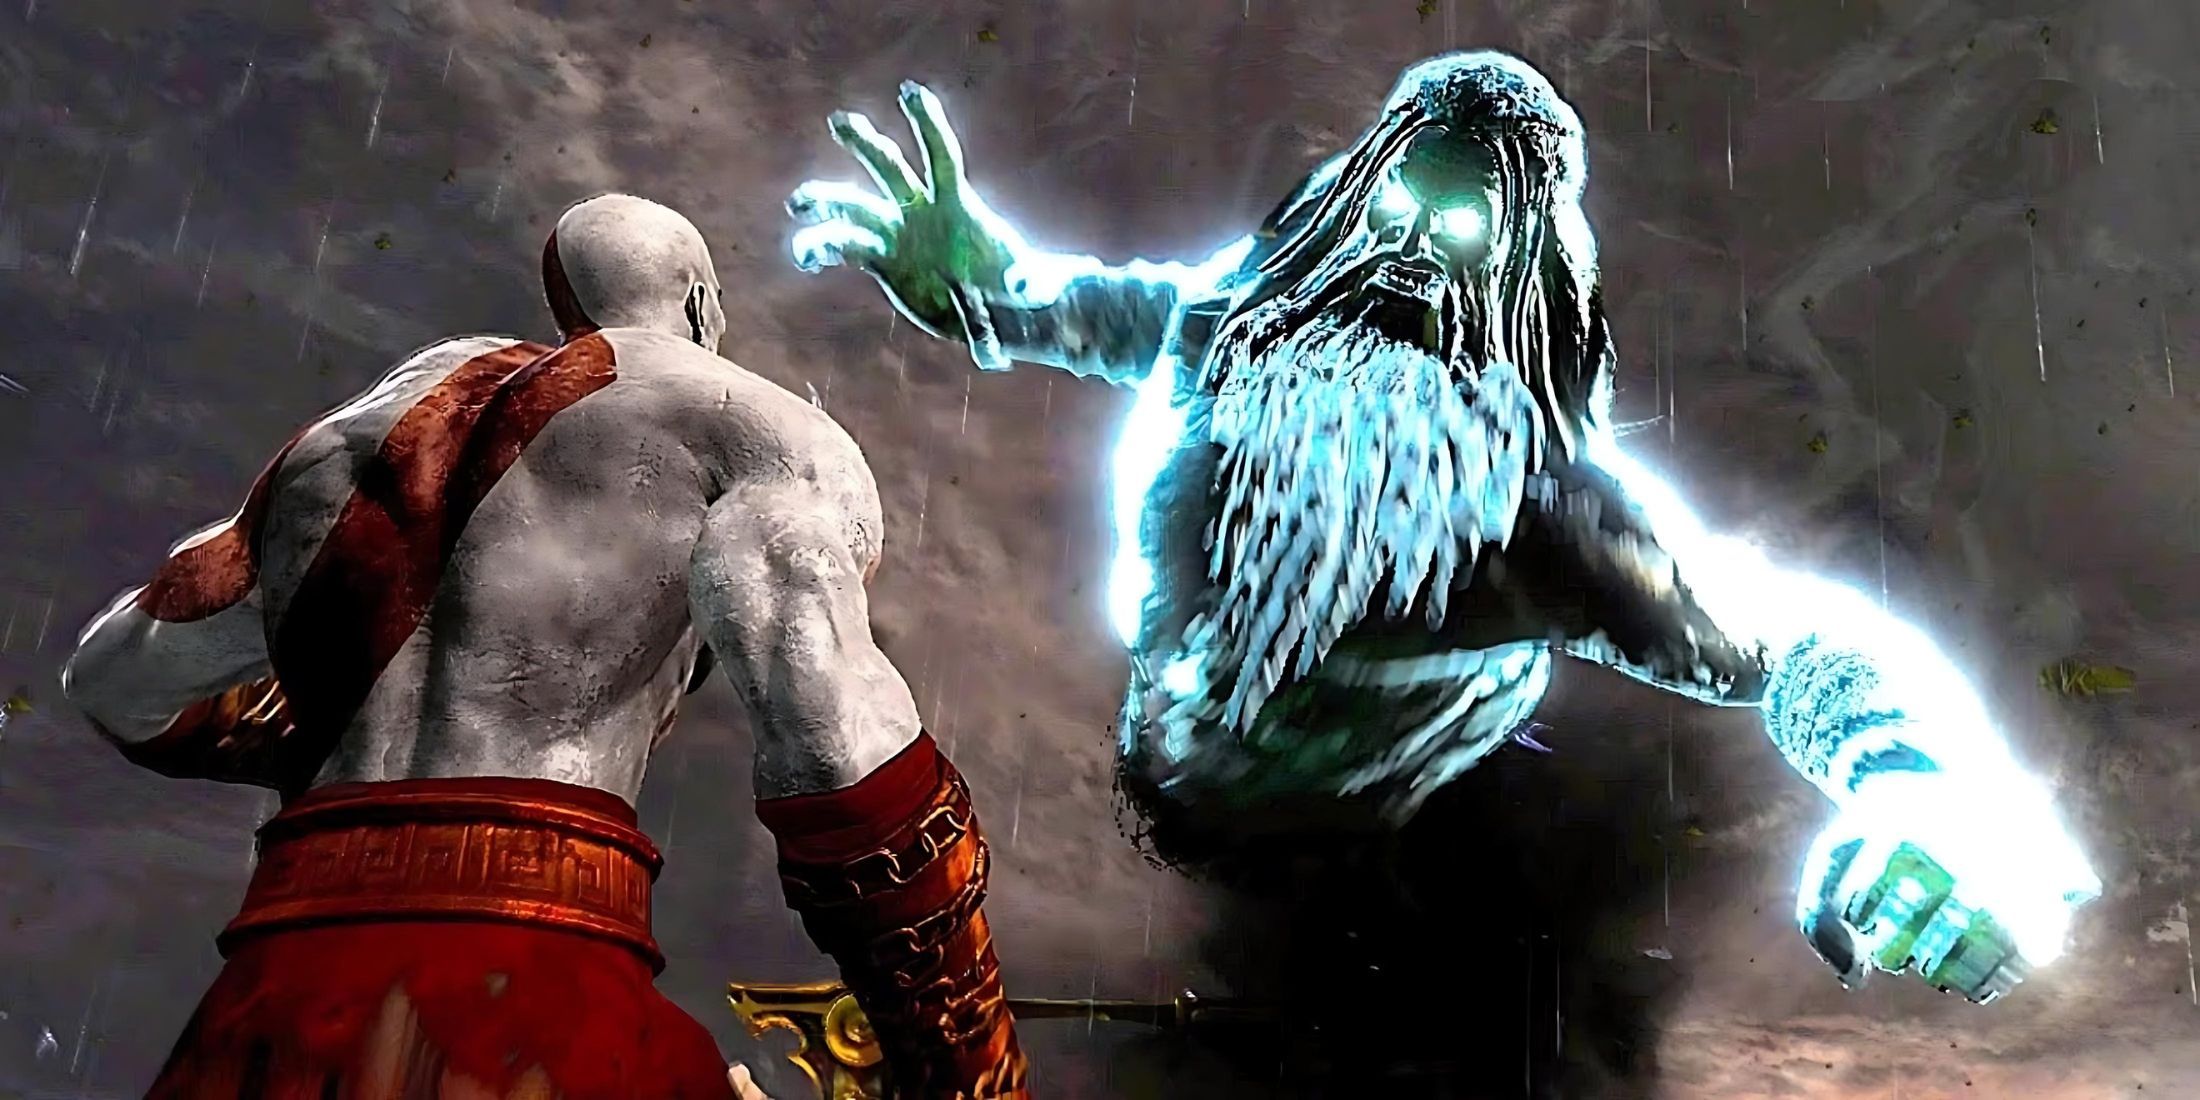 Zeus and Kratos fighting in God of War 3